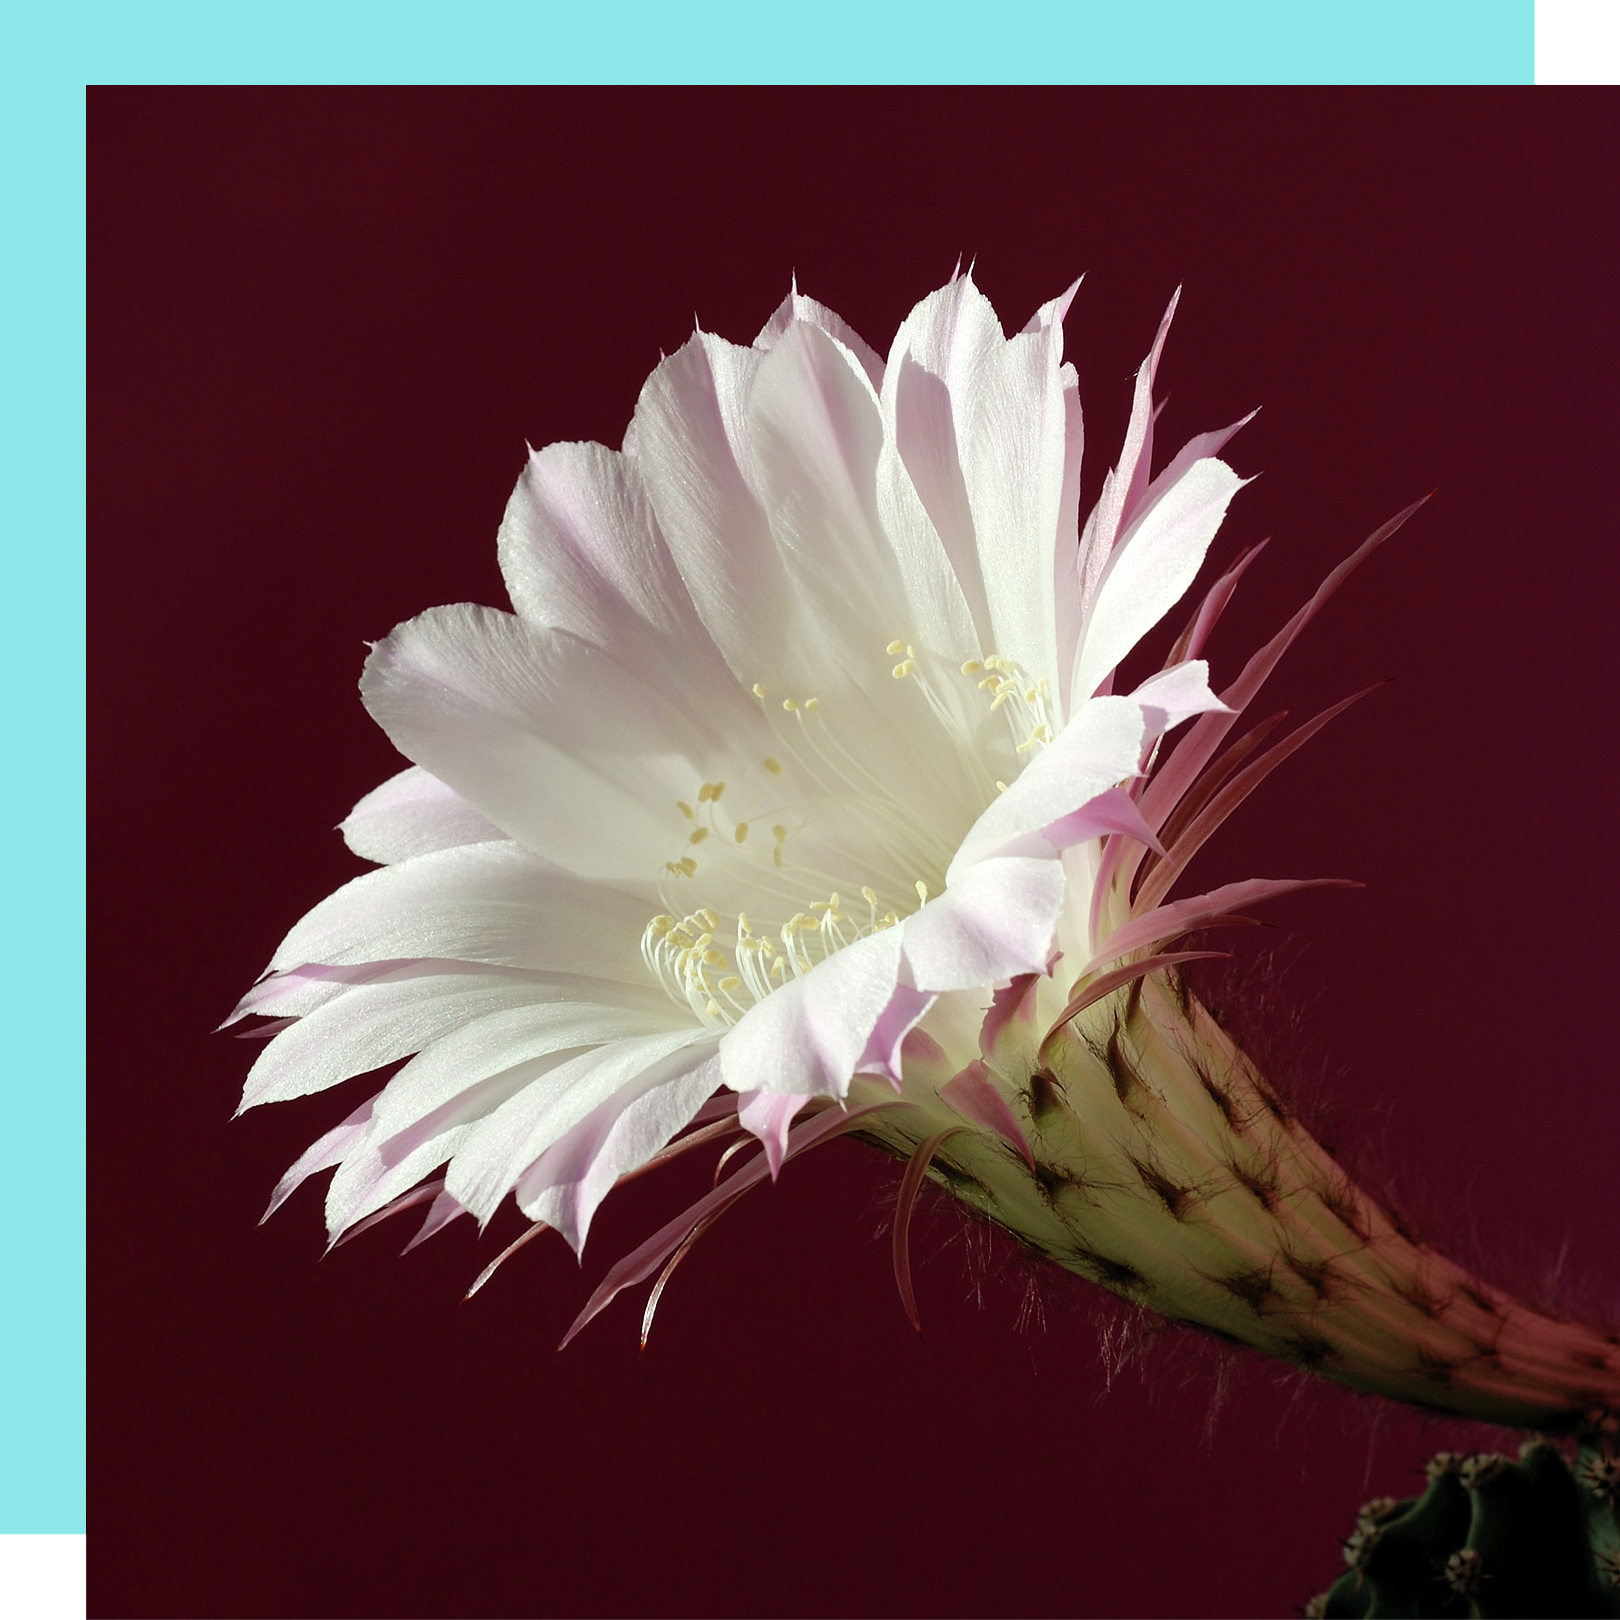 cactus flower upclose